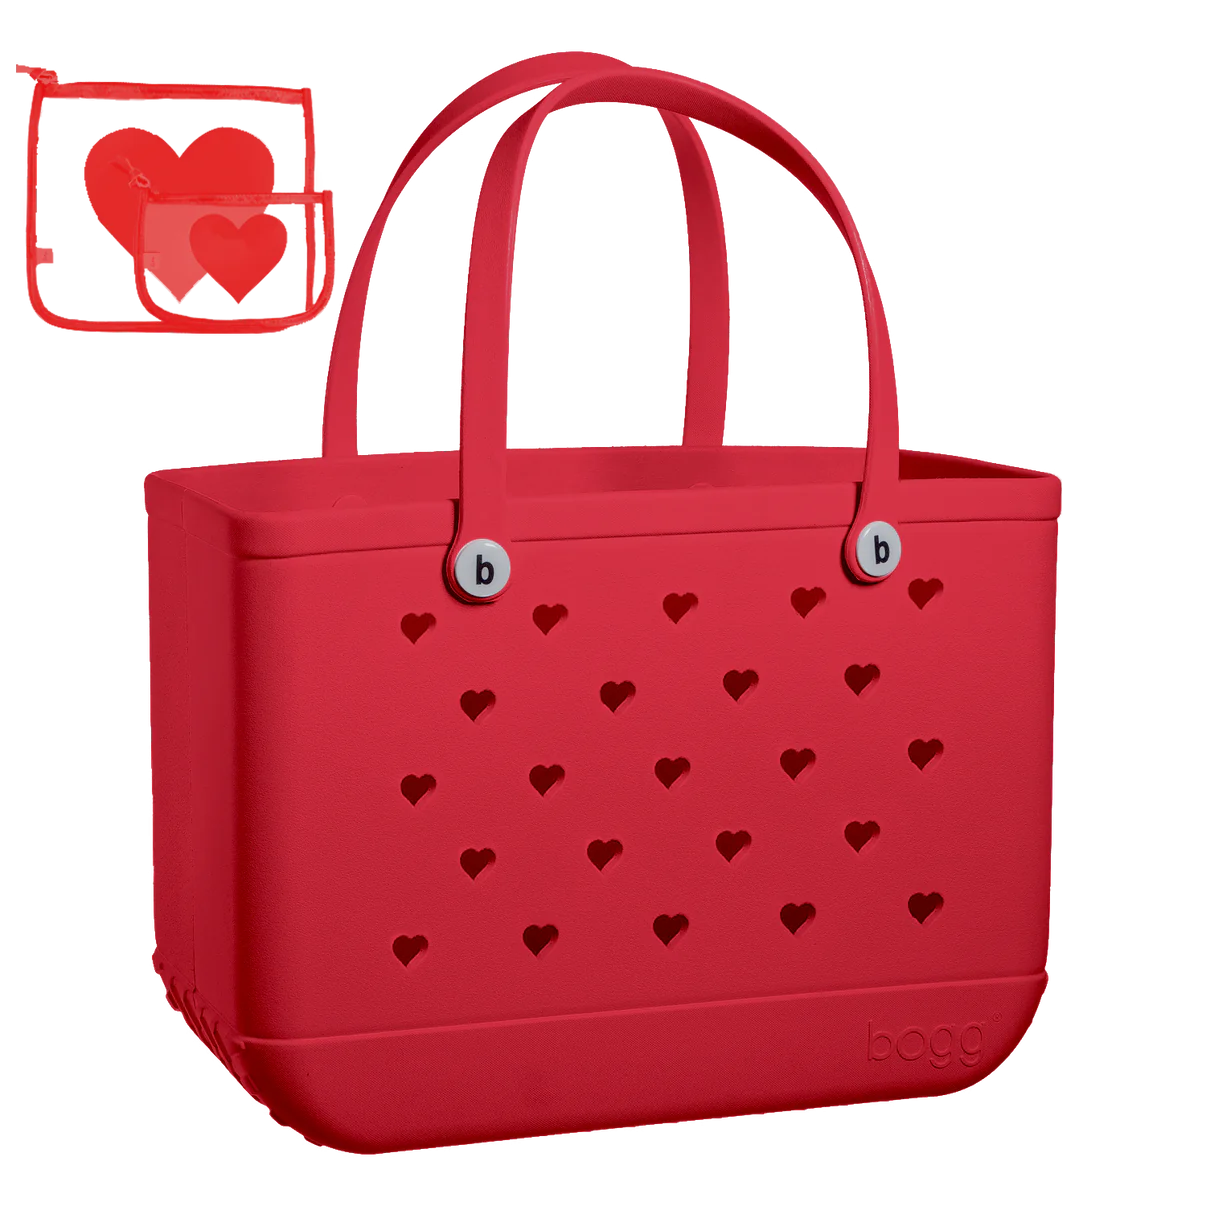 Bogg Bag Red Love Original Bogg Bag